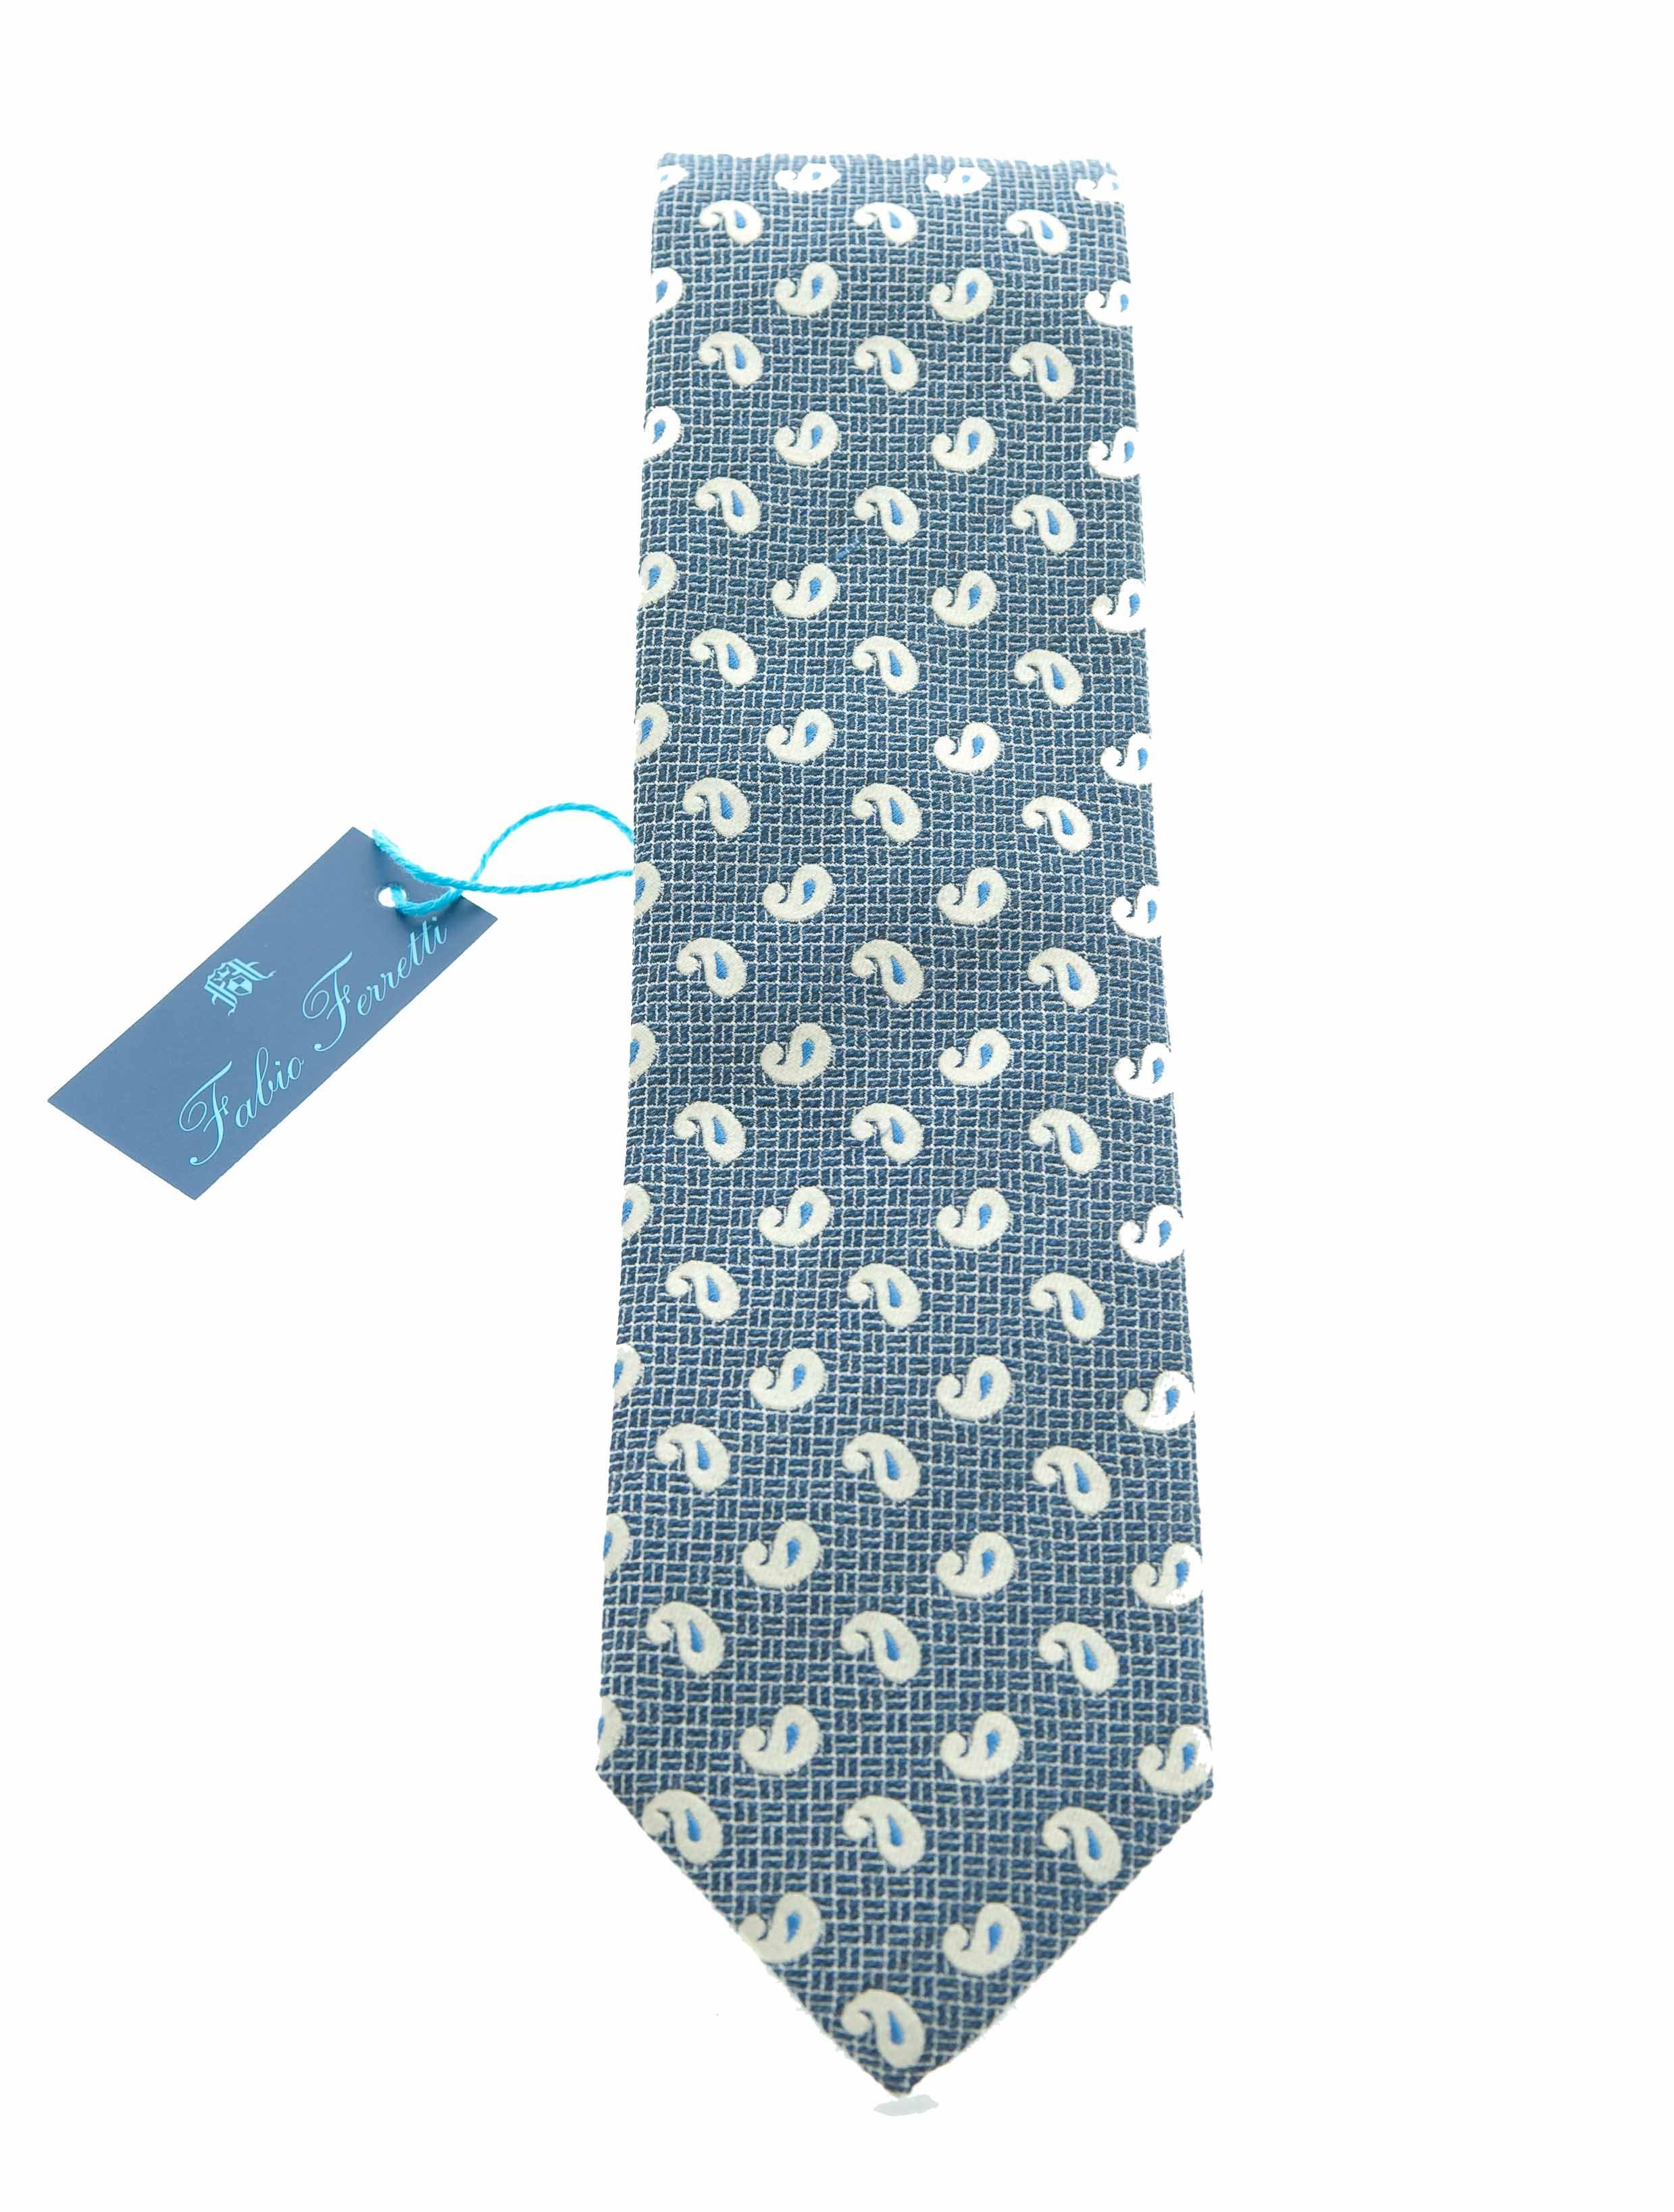 Fabio Ferretti silk tie blue background - Floccari Store